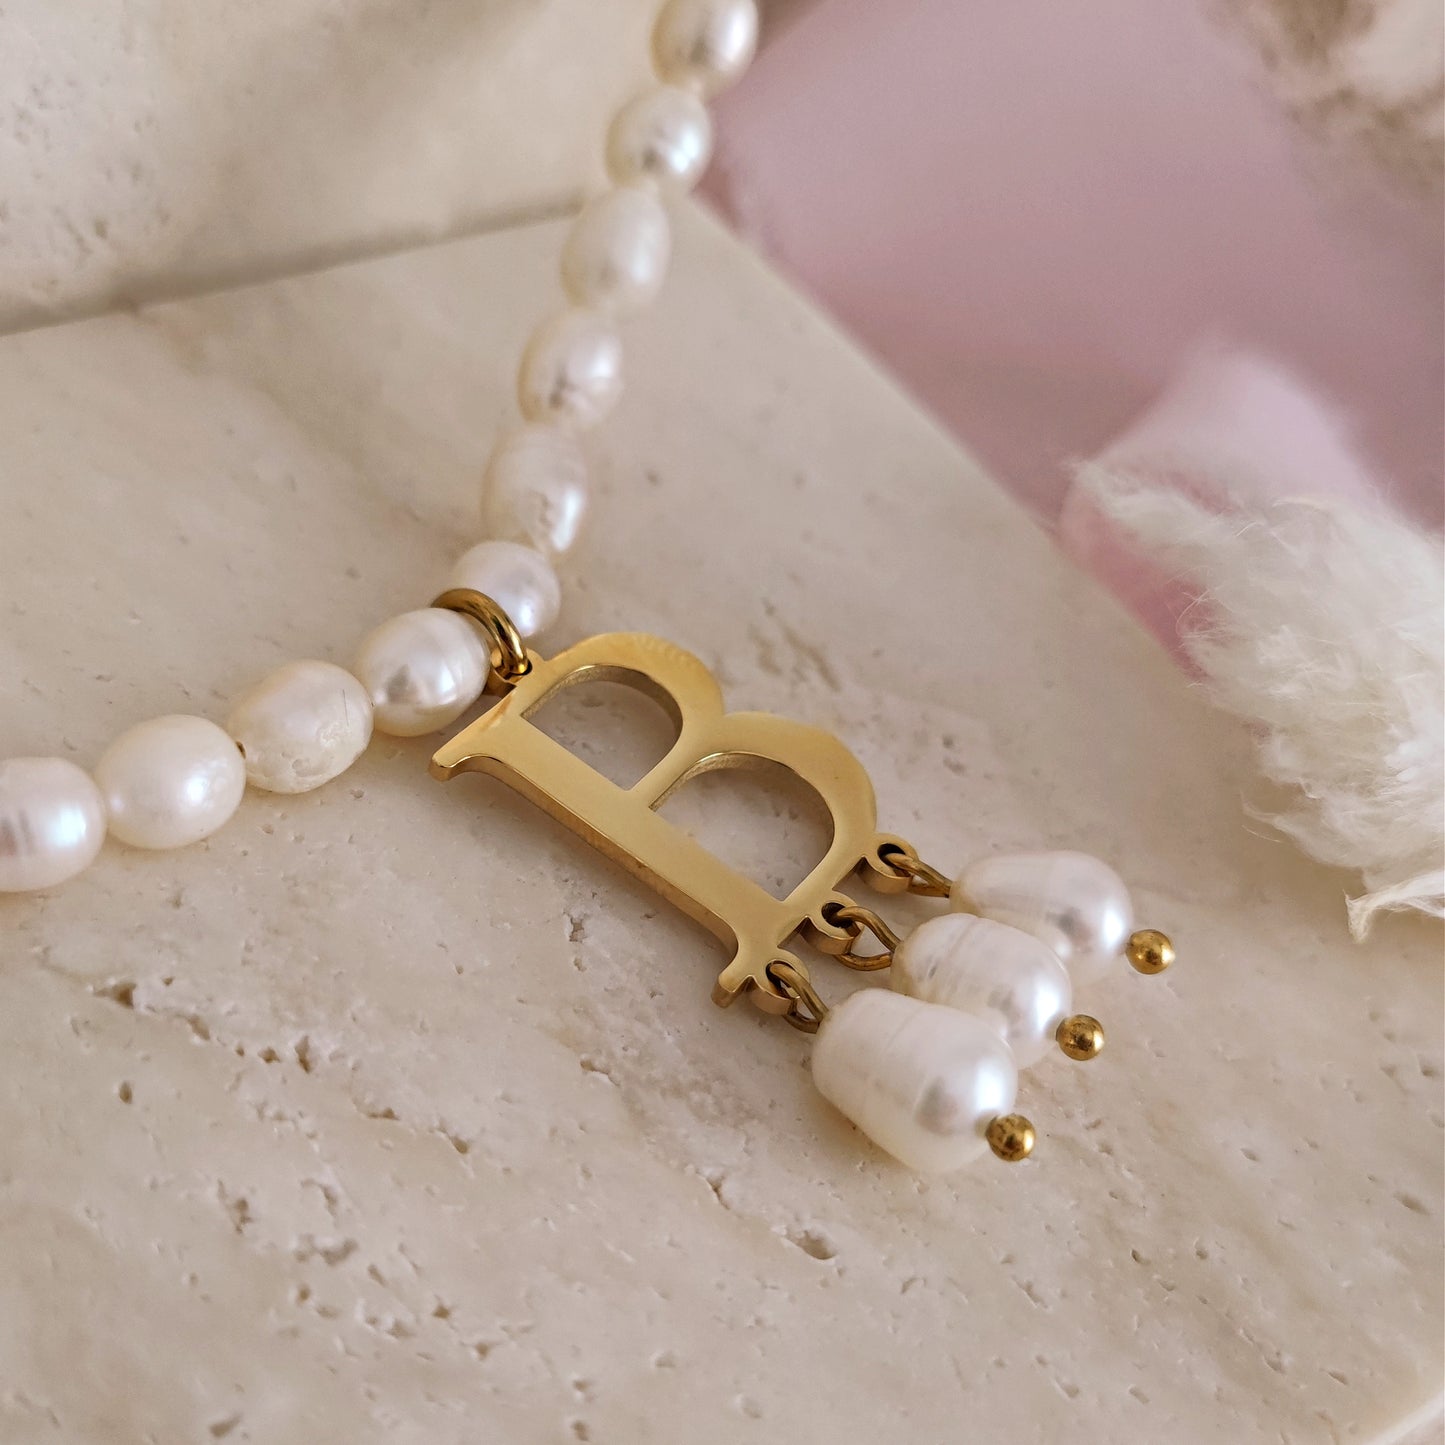 Collana Anne Boleyn con perle di fiume e lettera "B"